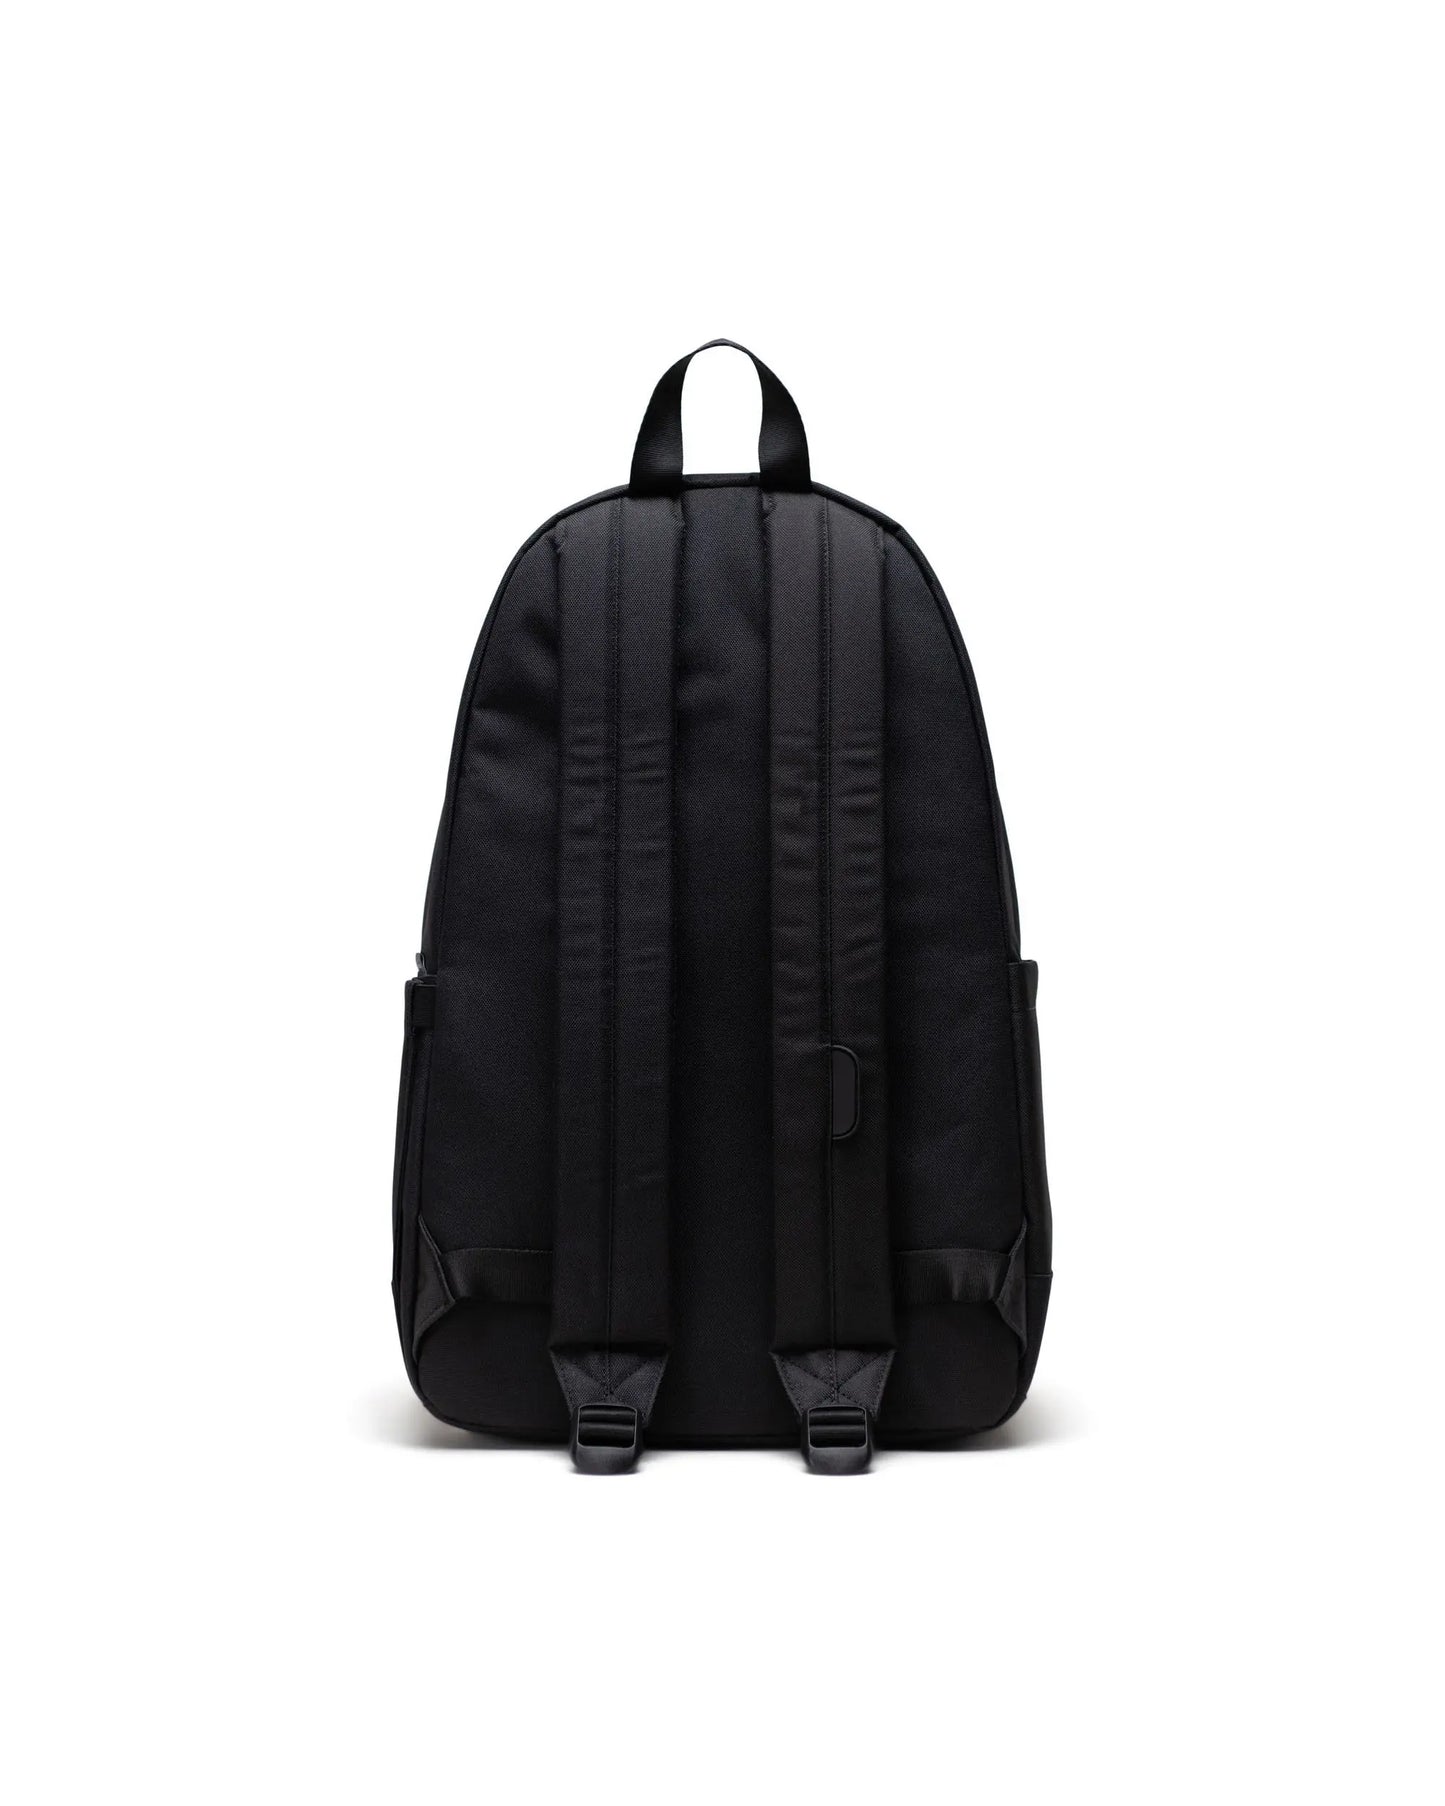 Herschel Heritage Backpack - Black Tonal